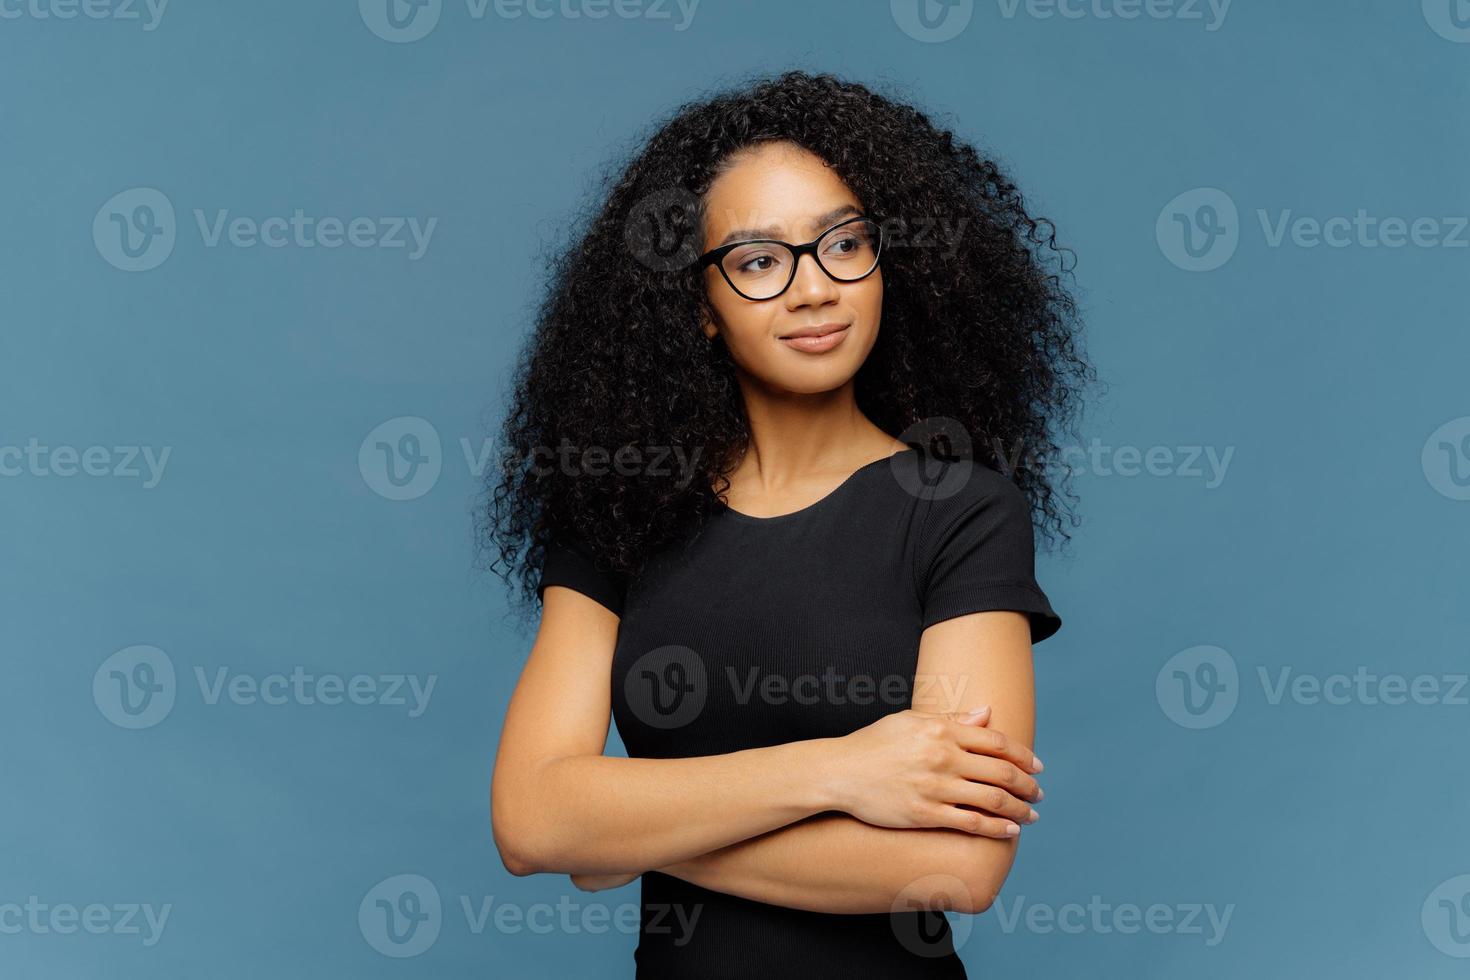 photo d'une femme afro satisfaite et réfléchie garde les mains croisées sur la poitrine, concentrée de côté, porte des lunettes transparentes, un t-shirt noir décontracté, isolé sur fond bleu. concept d'expressions faciales humaines